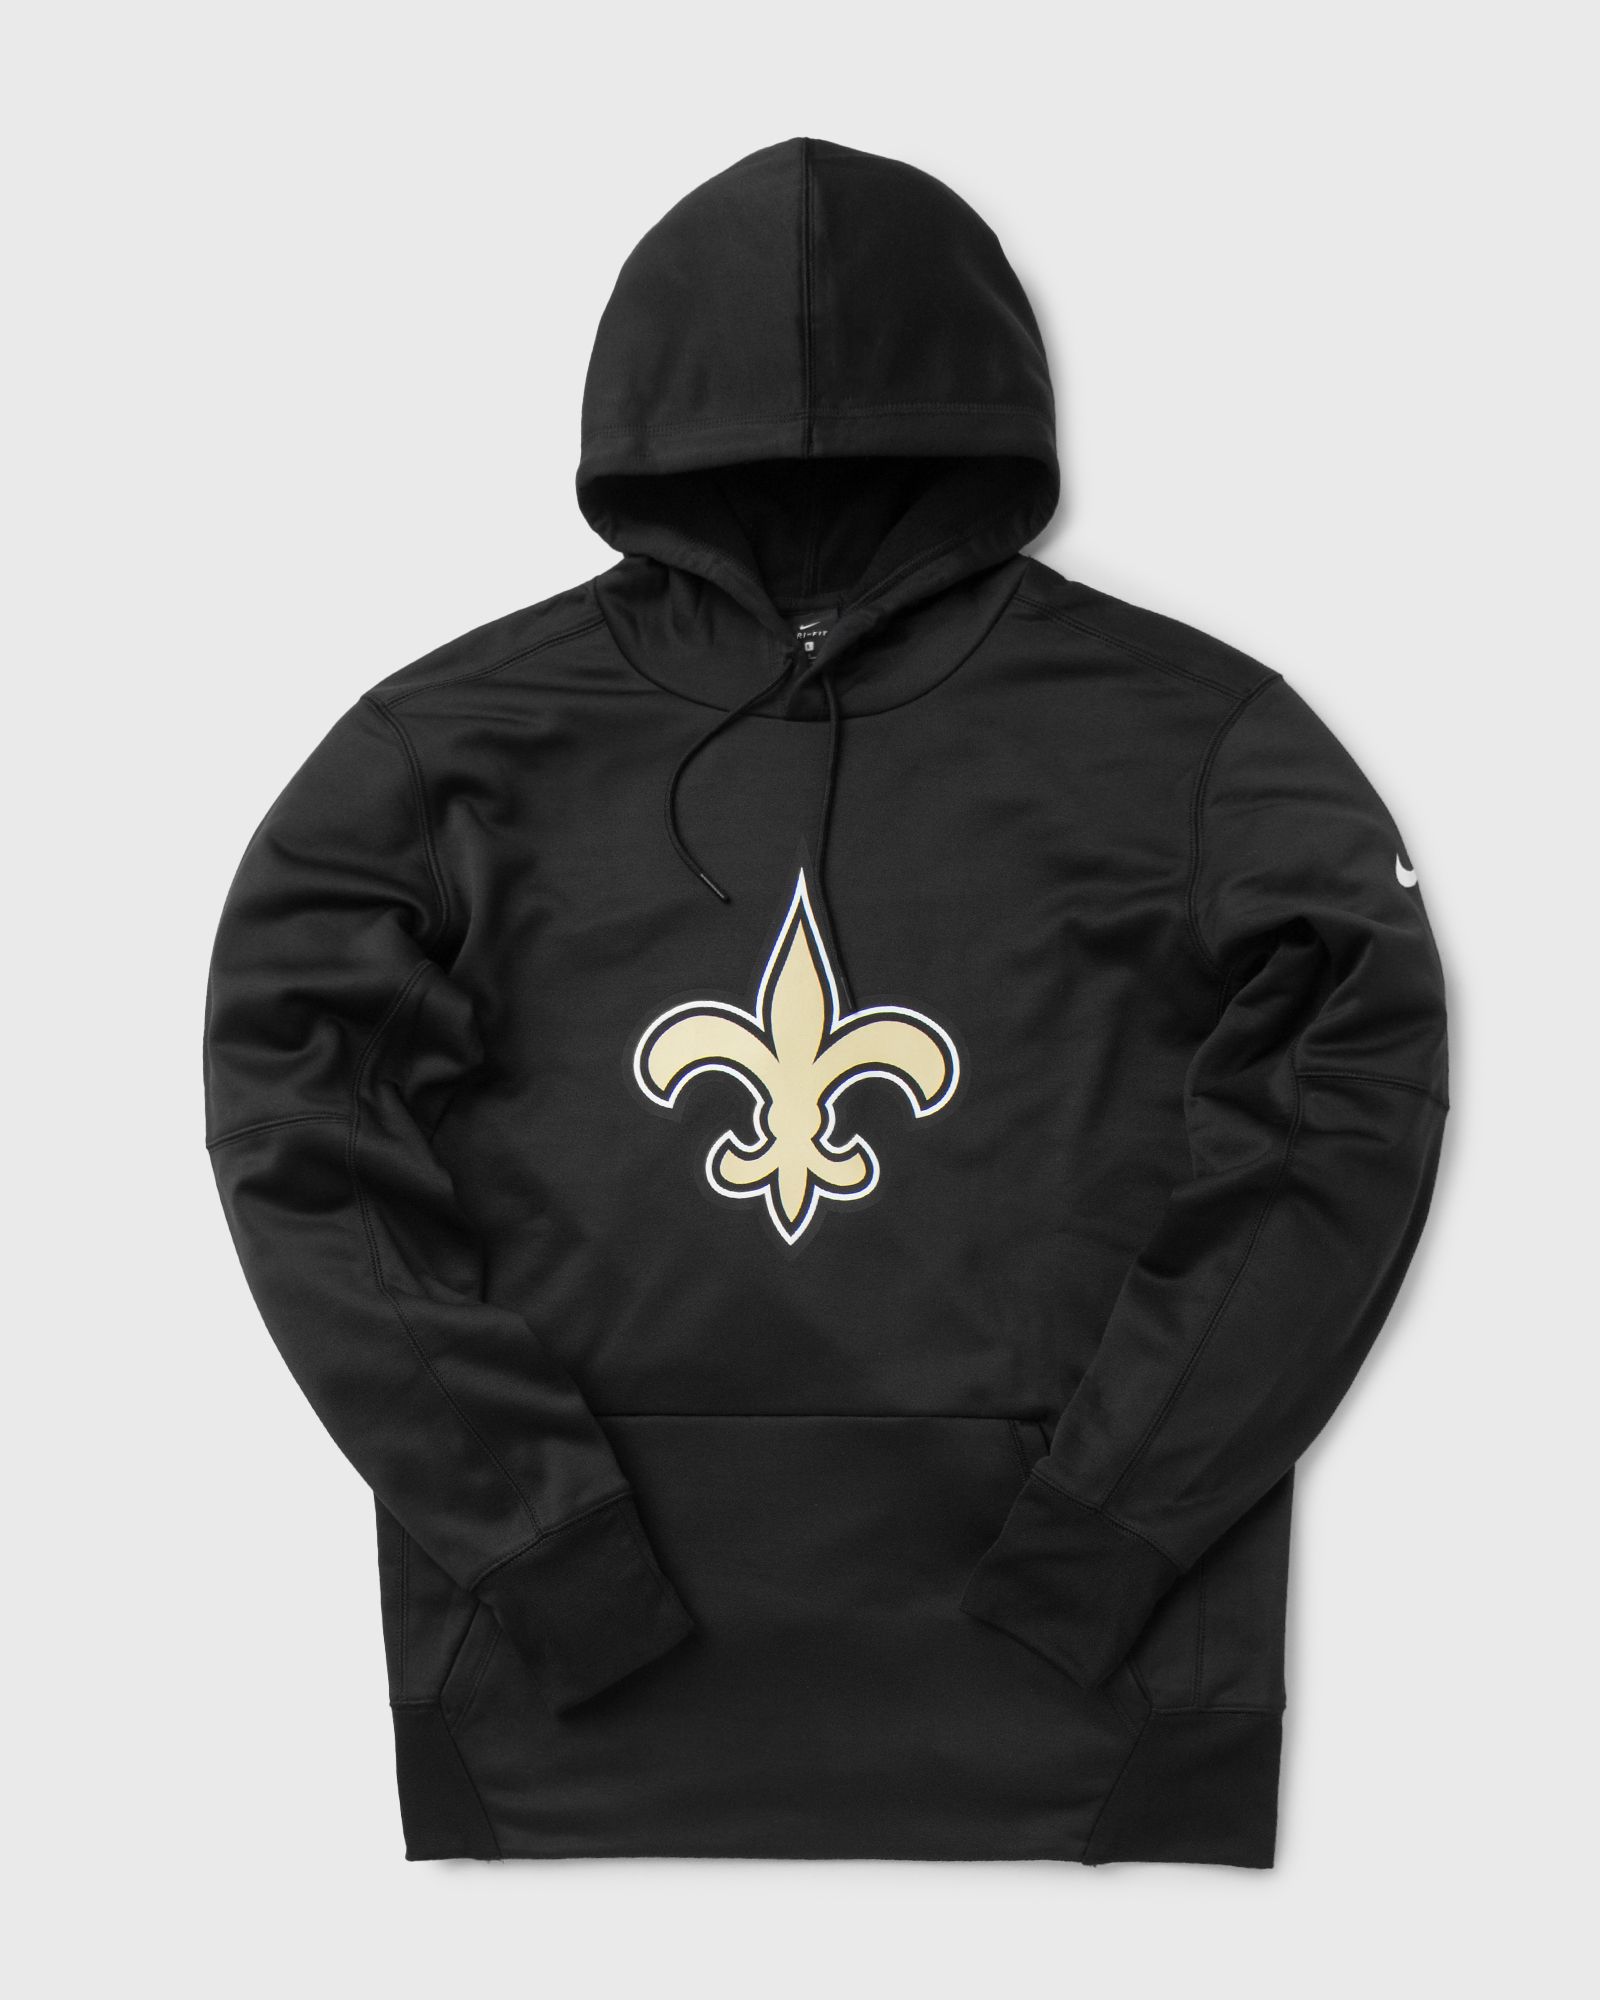 Nike - prime logo therma hoodie new orleans saints men hoodies black in größe:xxl